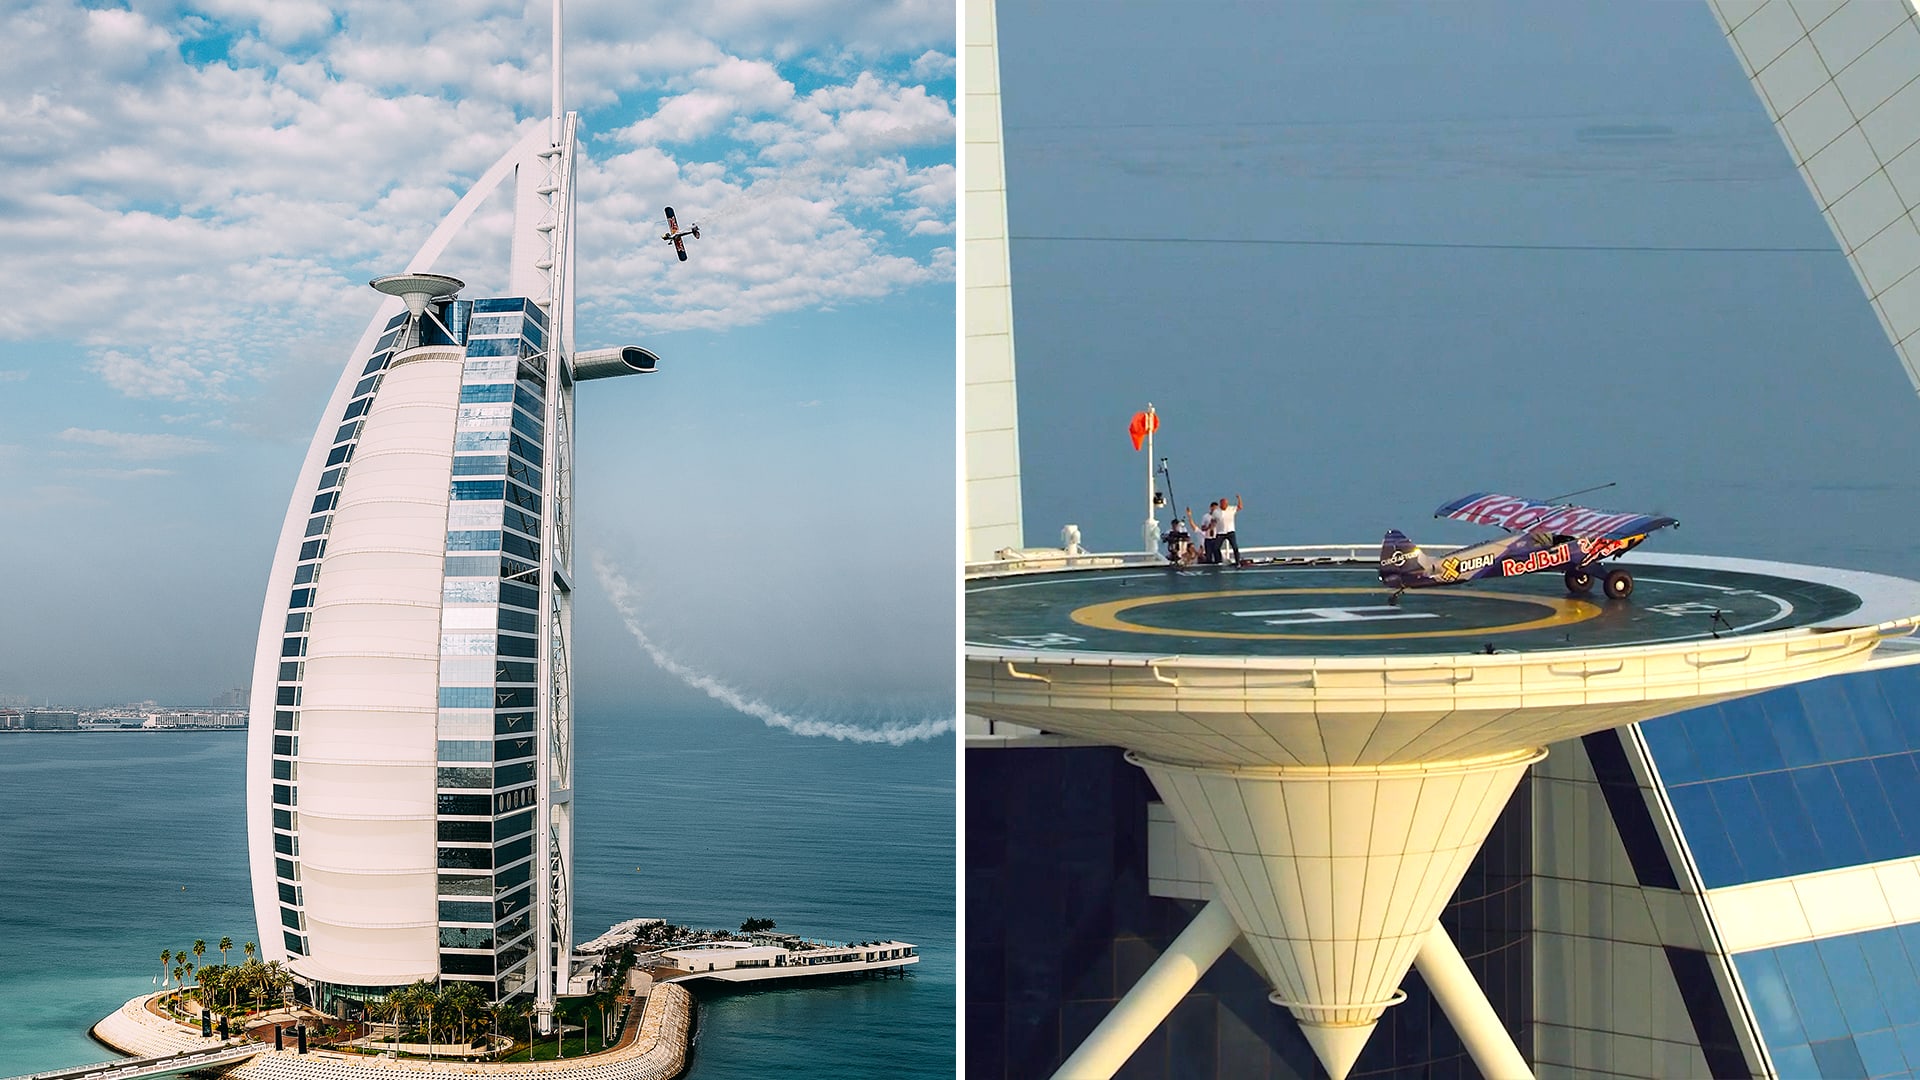 مهبط طائرات "برج العرب" الشهير يشهد أول محاولة للهبوط بطائرة فوق مبنى